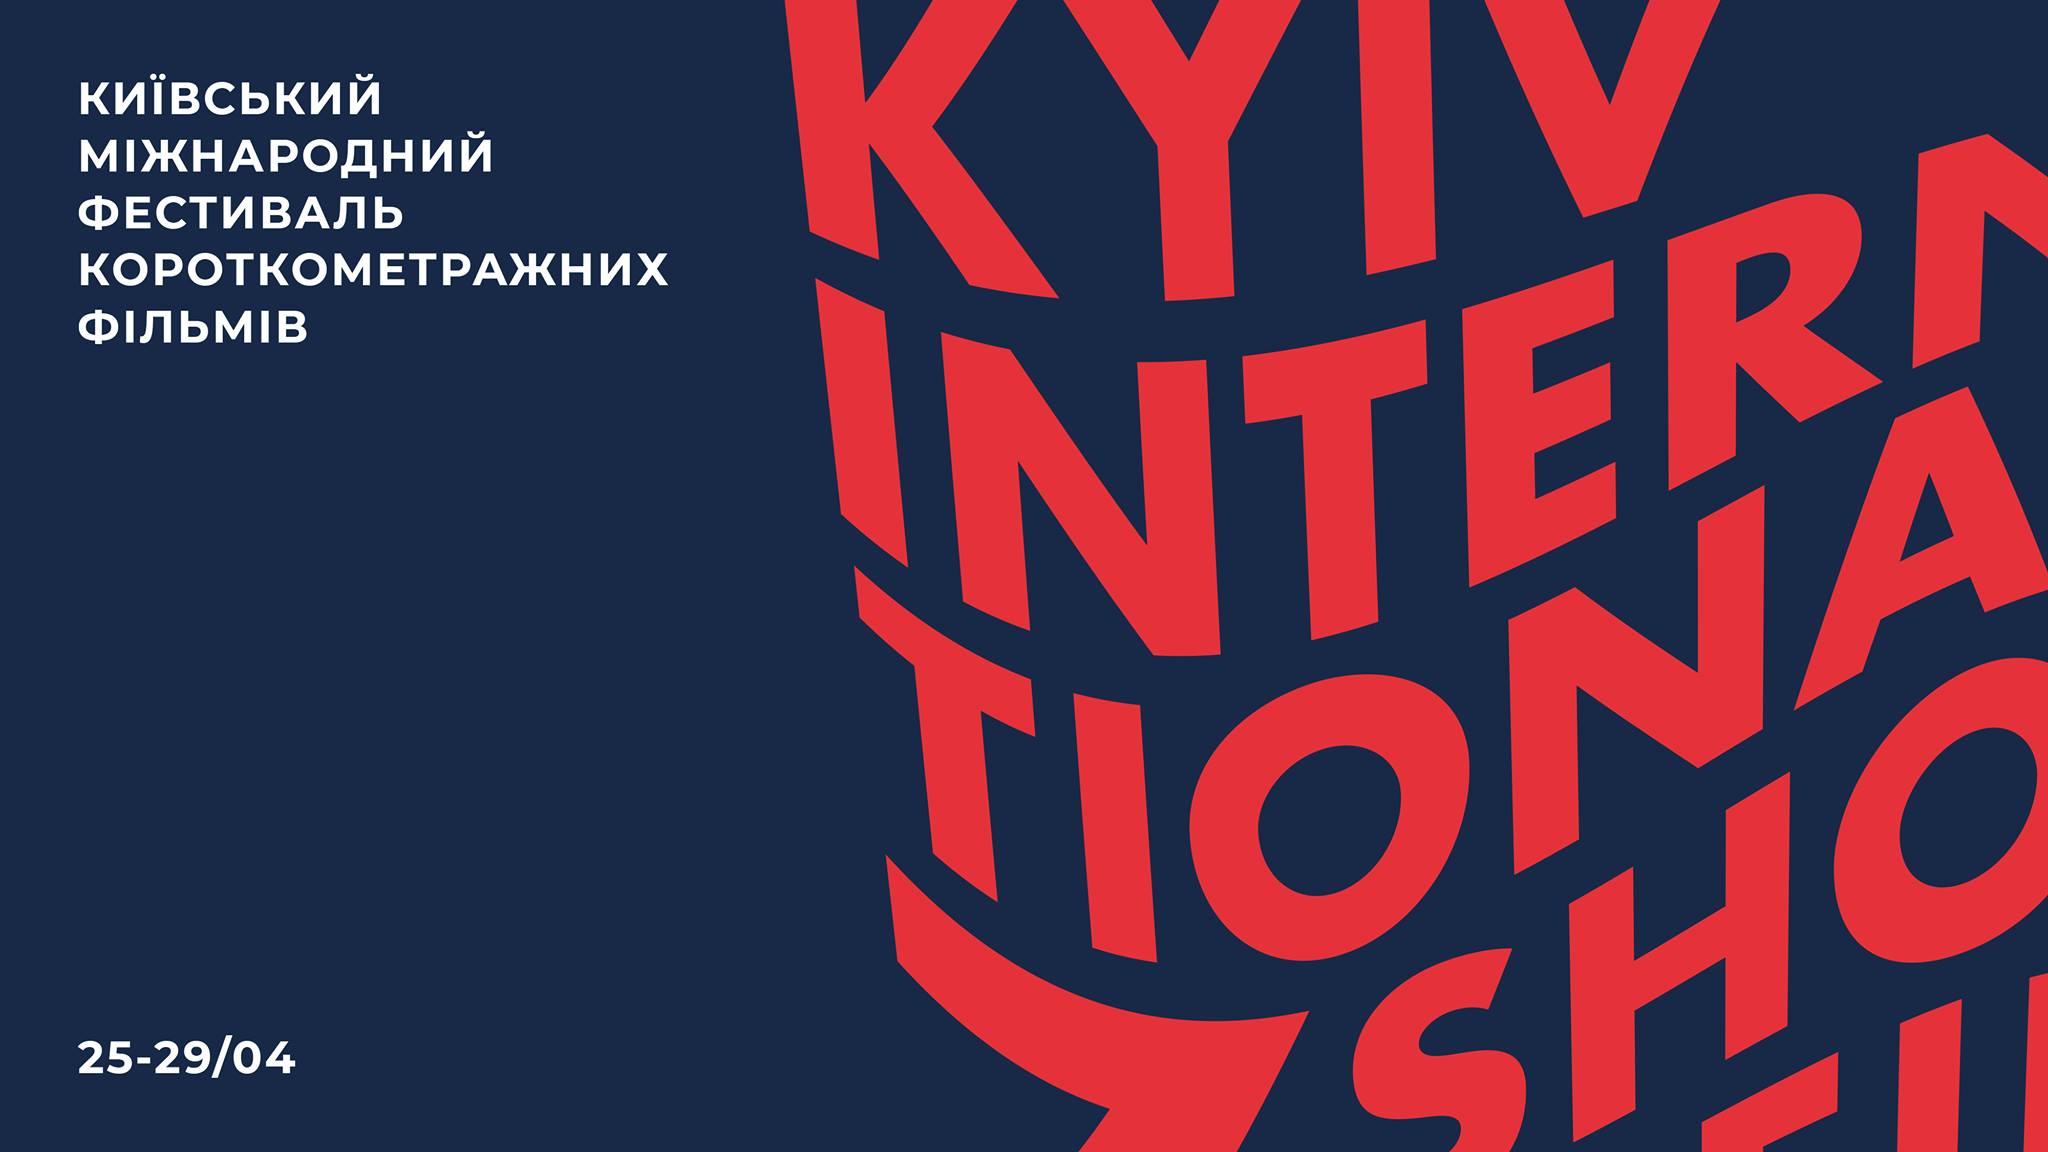 Сьомий Київський міжнародний фестиваль короткометражних фільмів пройде з 25 по 29 квітня